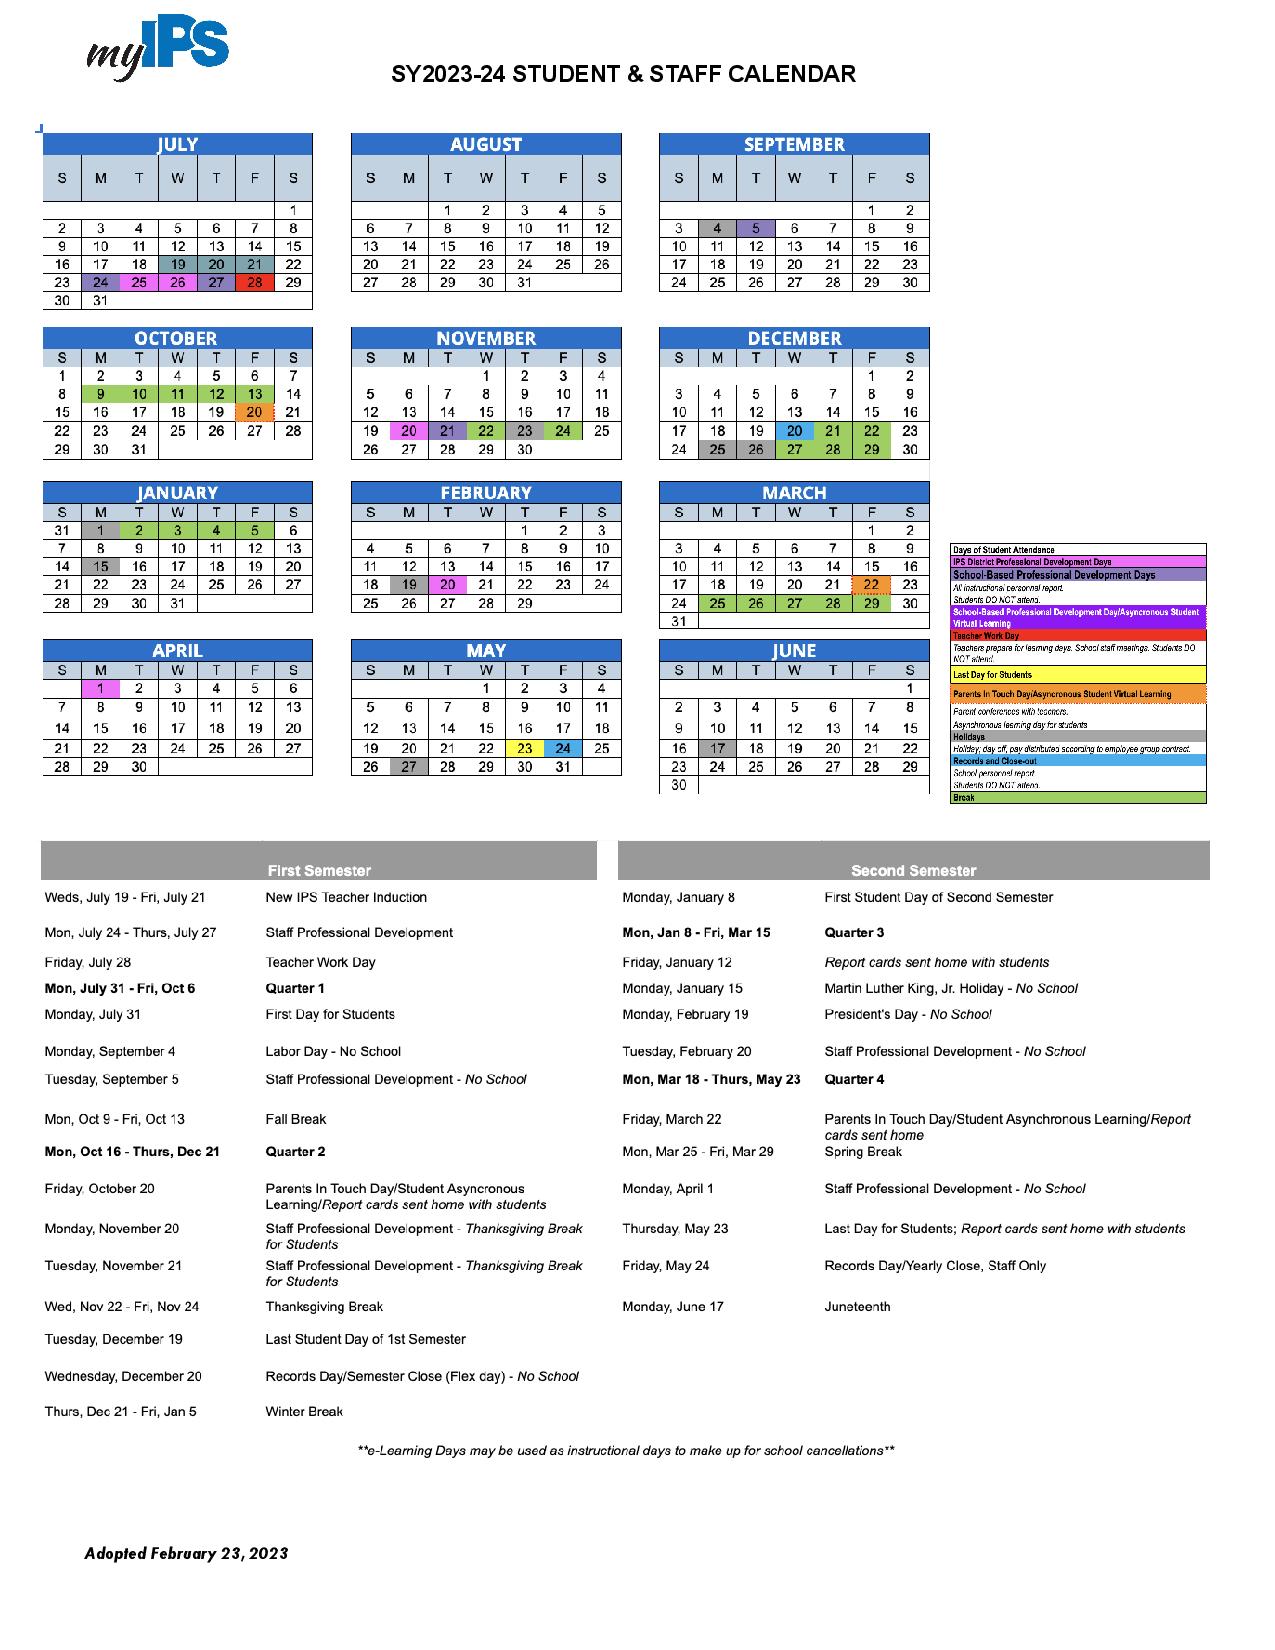 indianapolis-public-schools-calendar-holidays-2023-2024-pdf